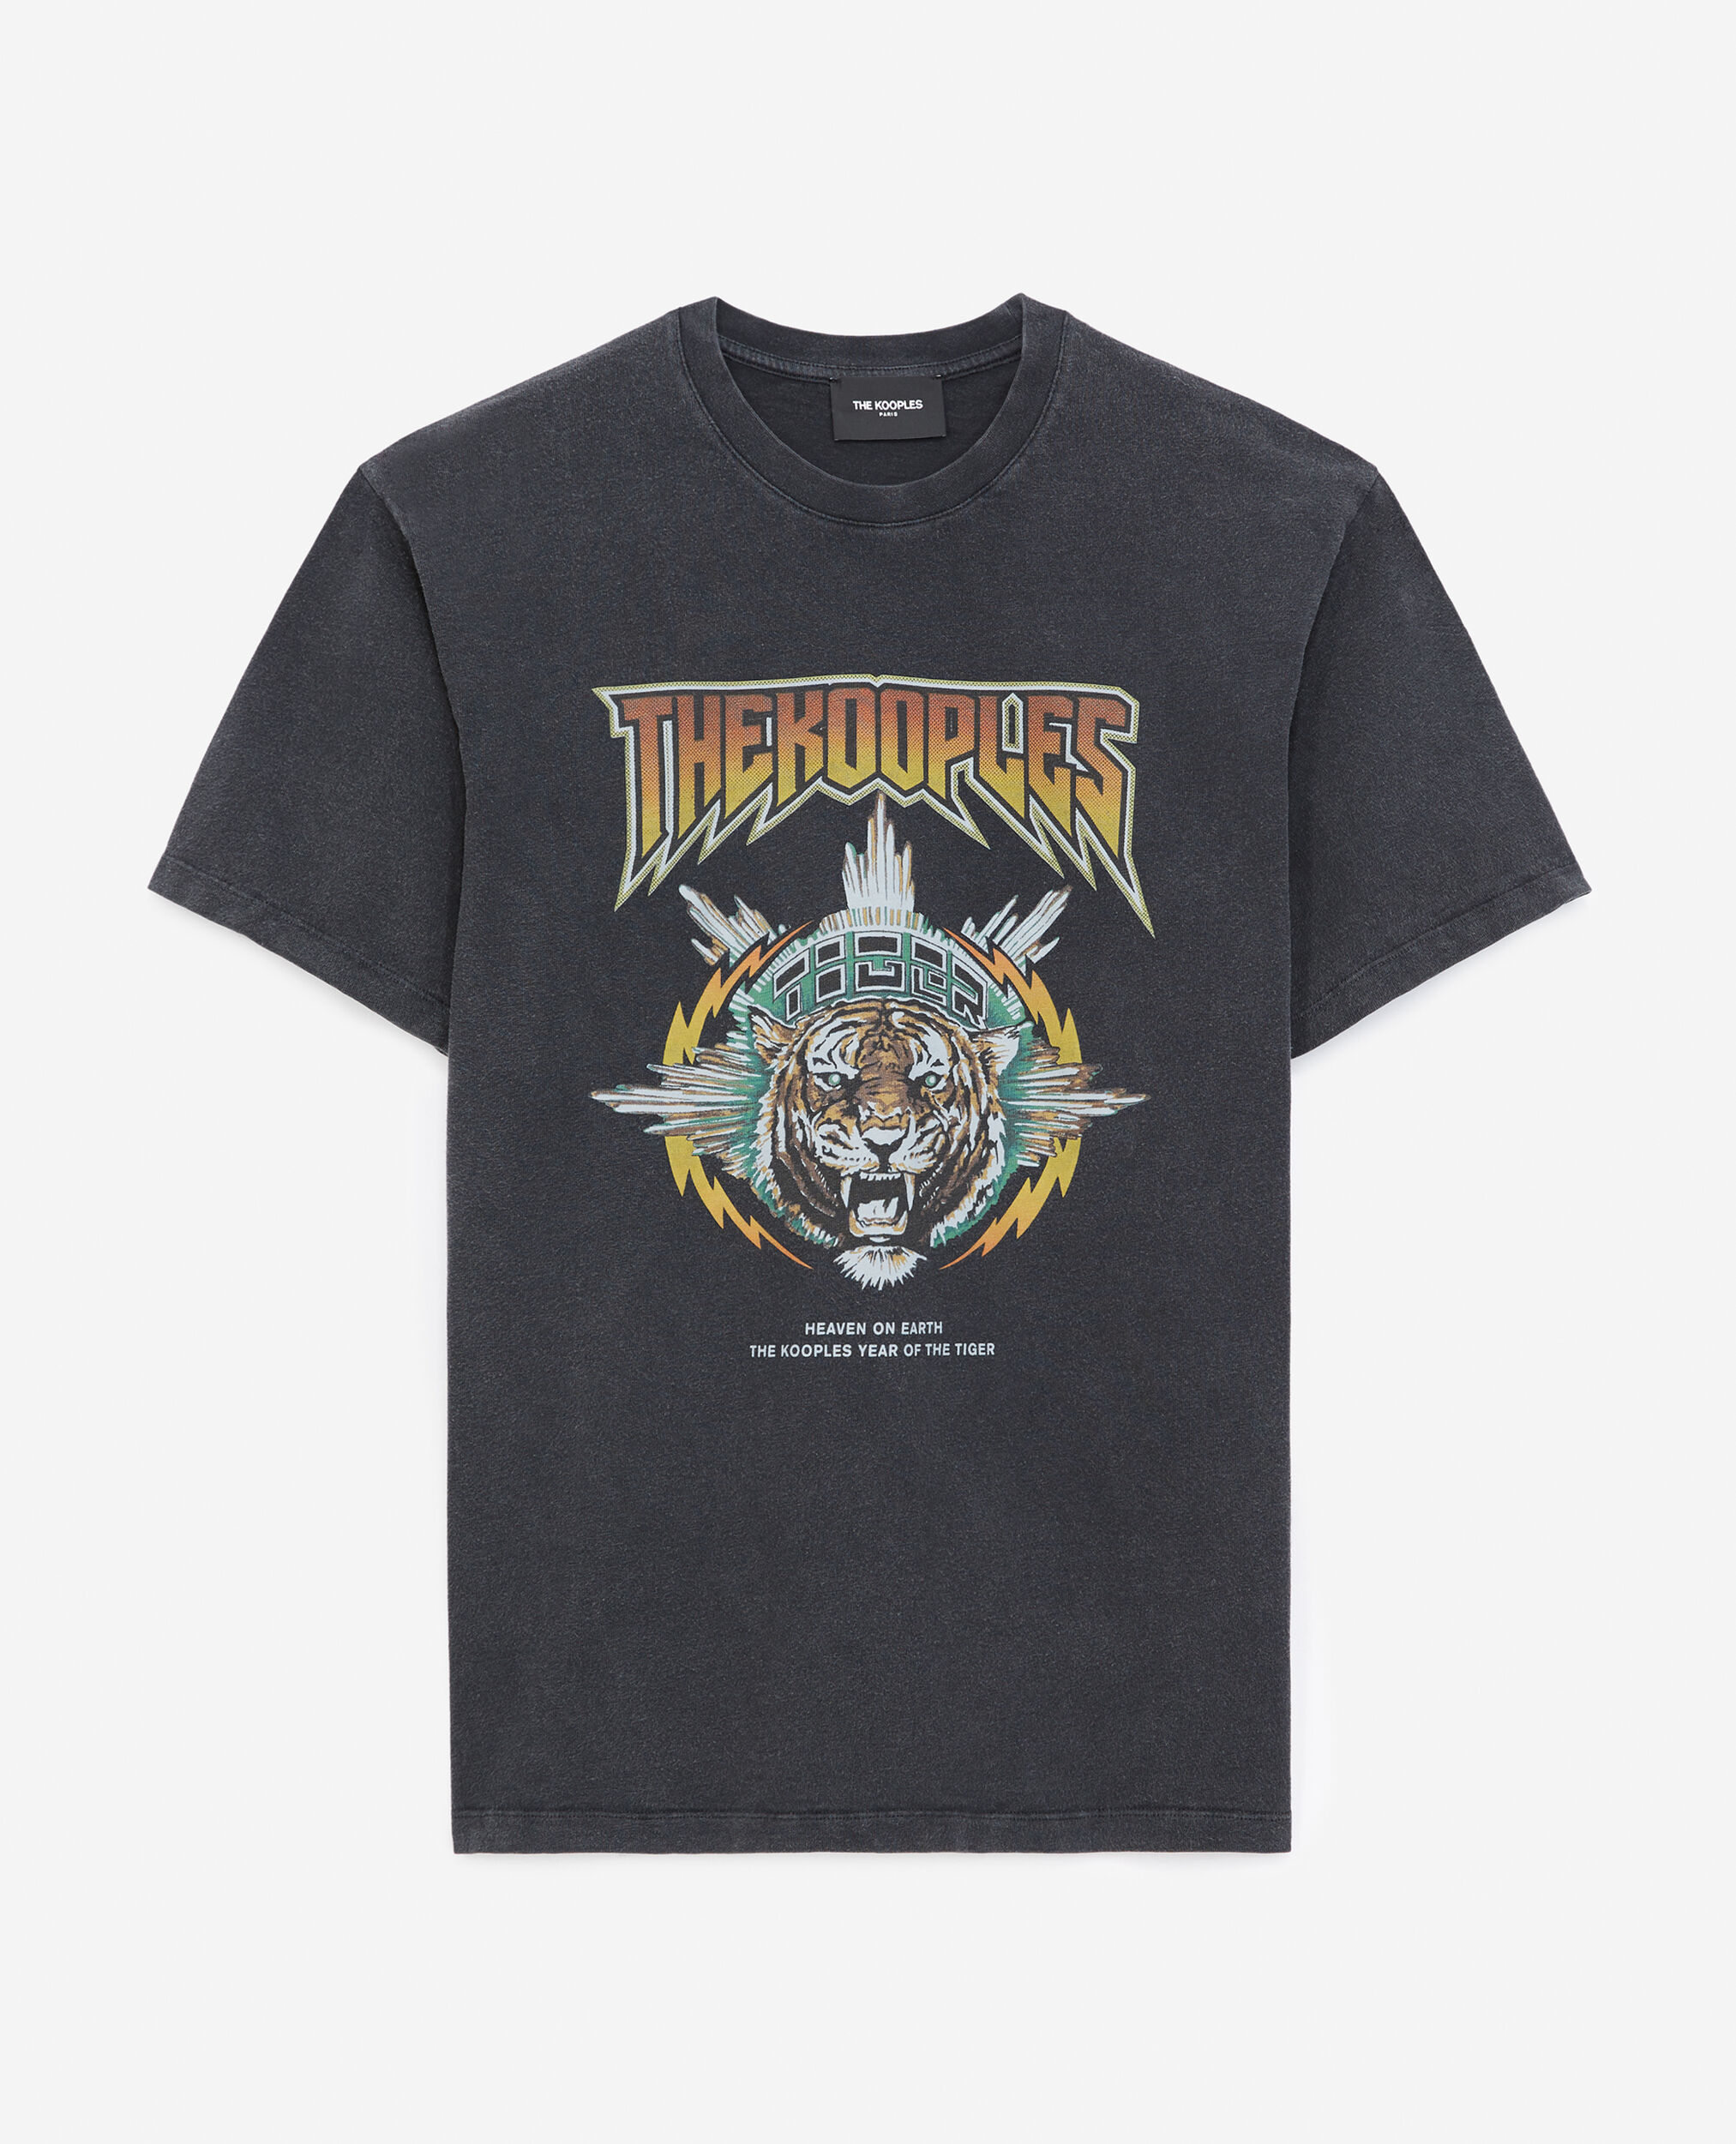 Tiger rock t-shirt, BLACK USED, hi-res image number null